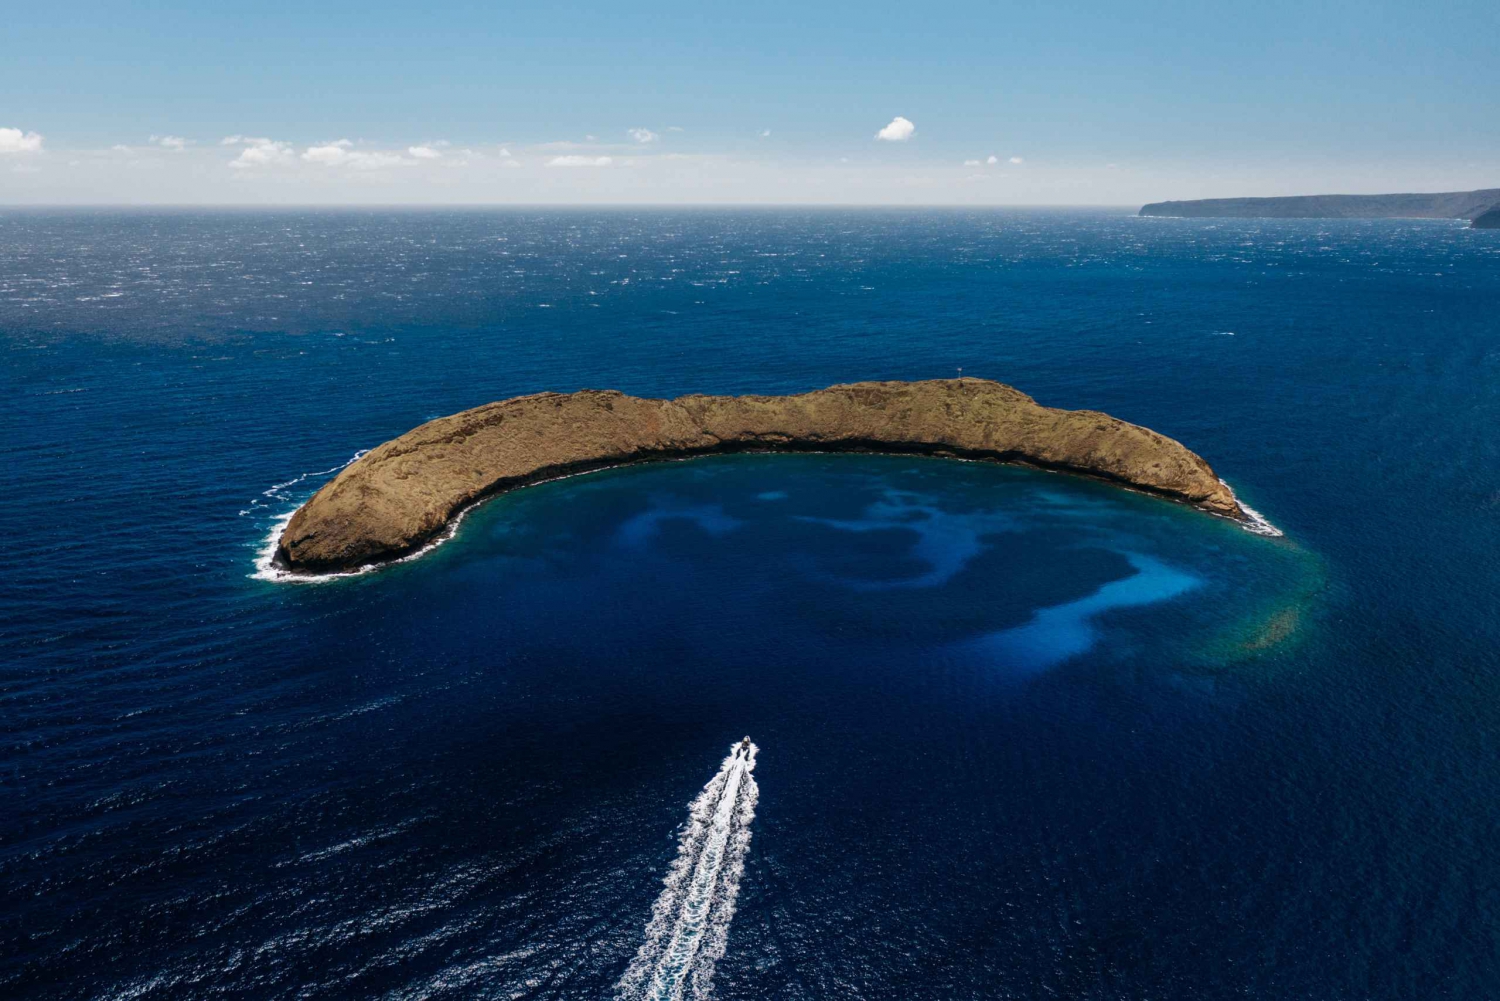 South Maui: crociera con snorkeling nel cratere vulcanico Molokini